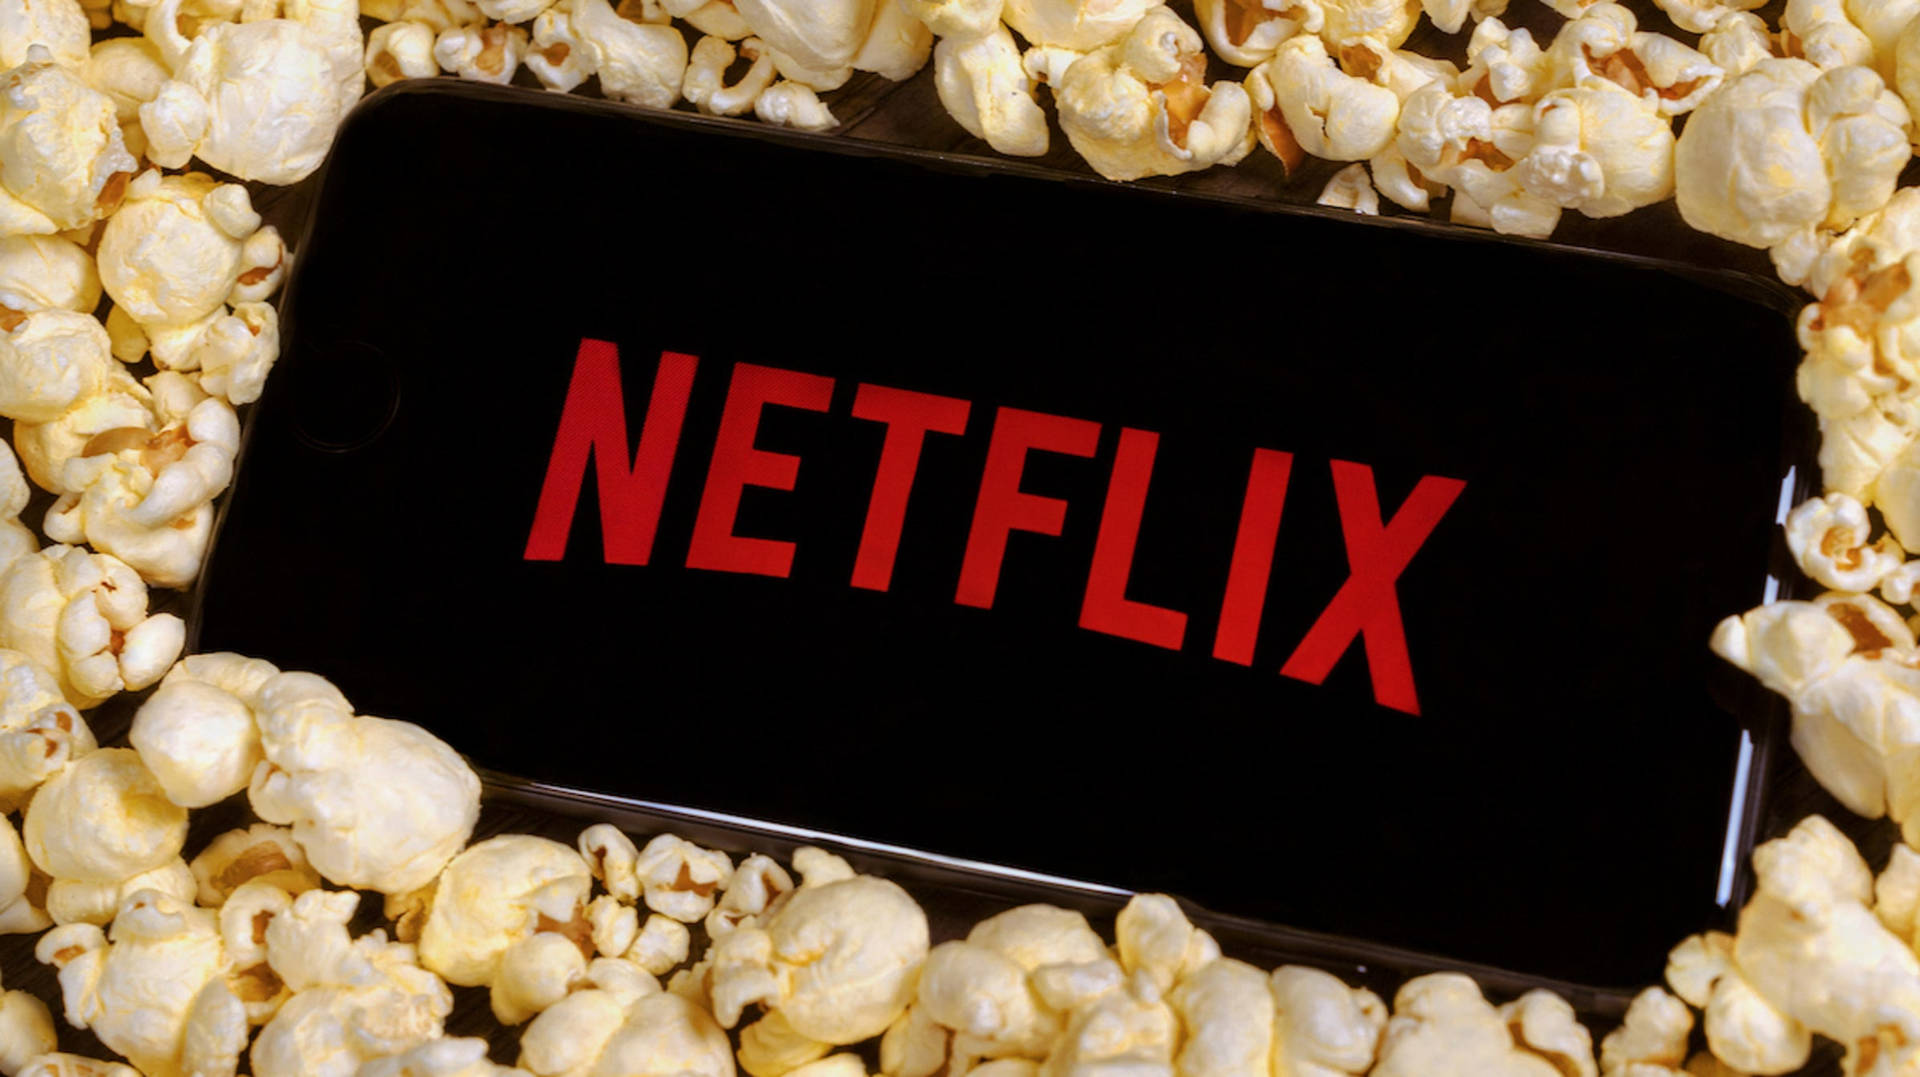 Netflix Aesthetic Popcorn Background